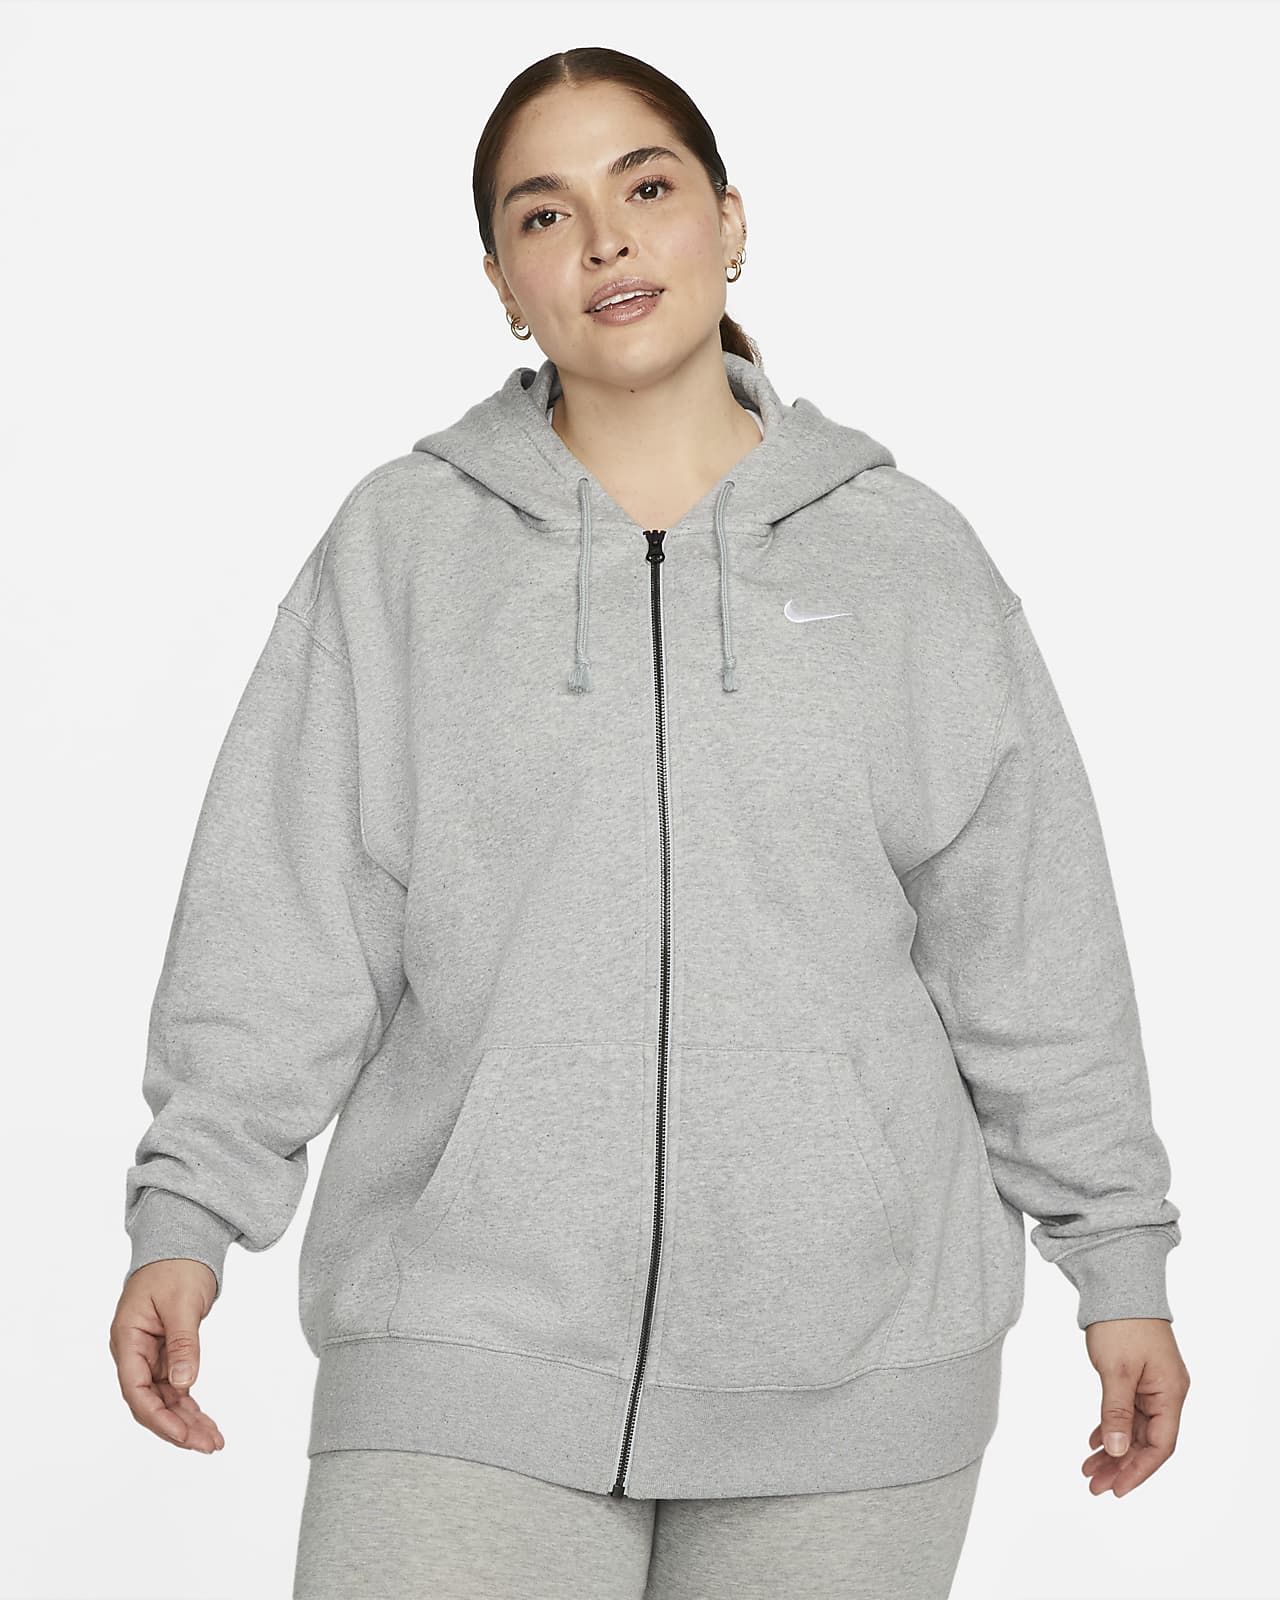 Doorbraak vochtigheid oven Nike Sportswear Essential Fleecehoodie met rits over de hele lengte voor  dames (Plus Size). Nike NL